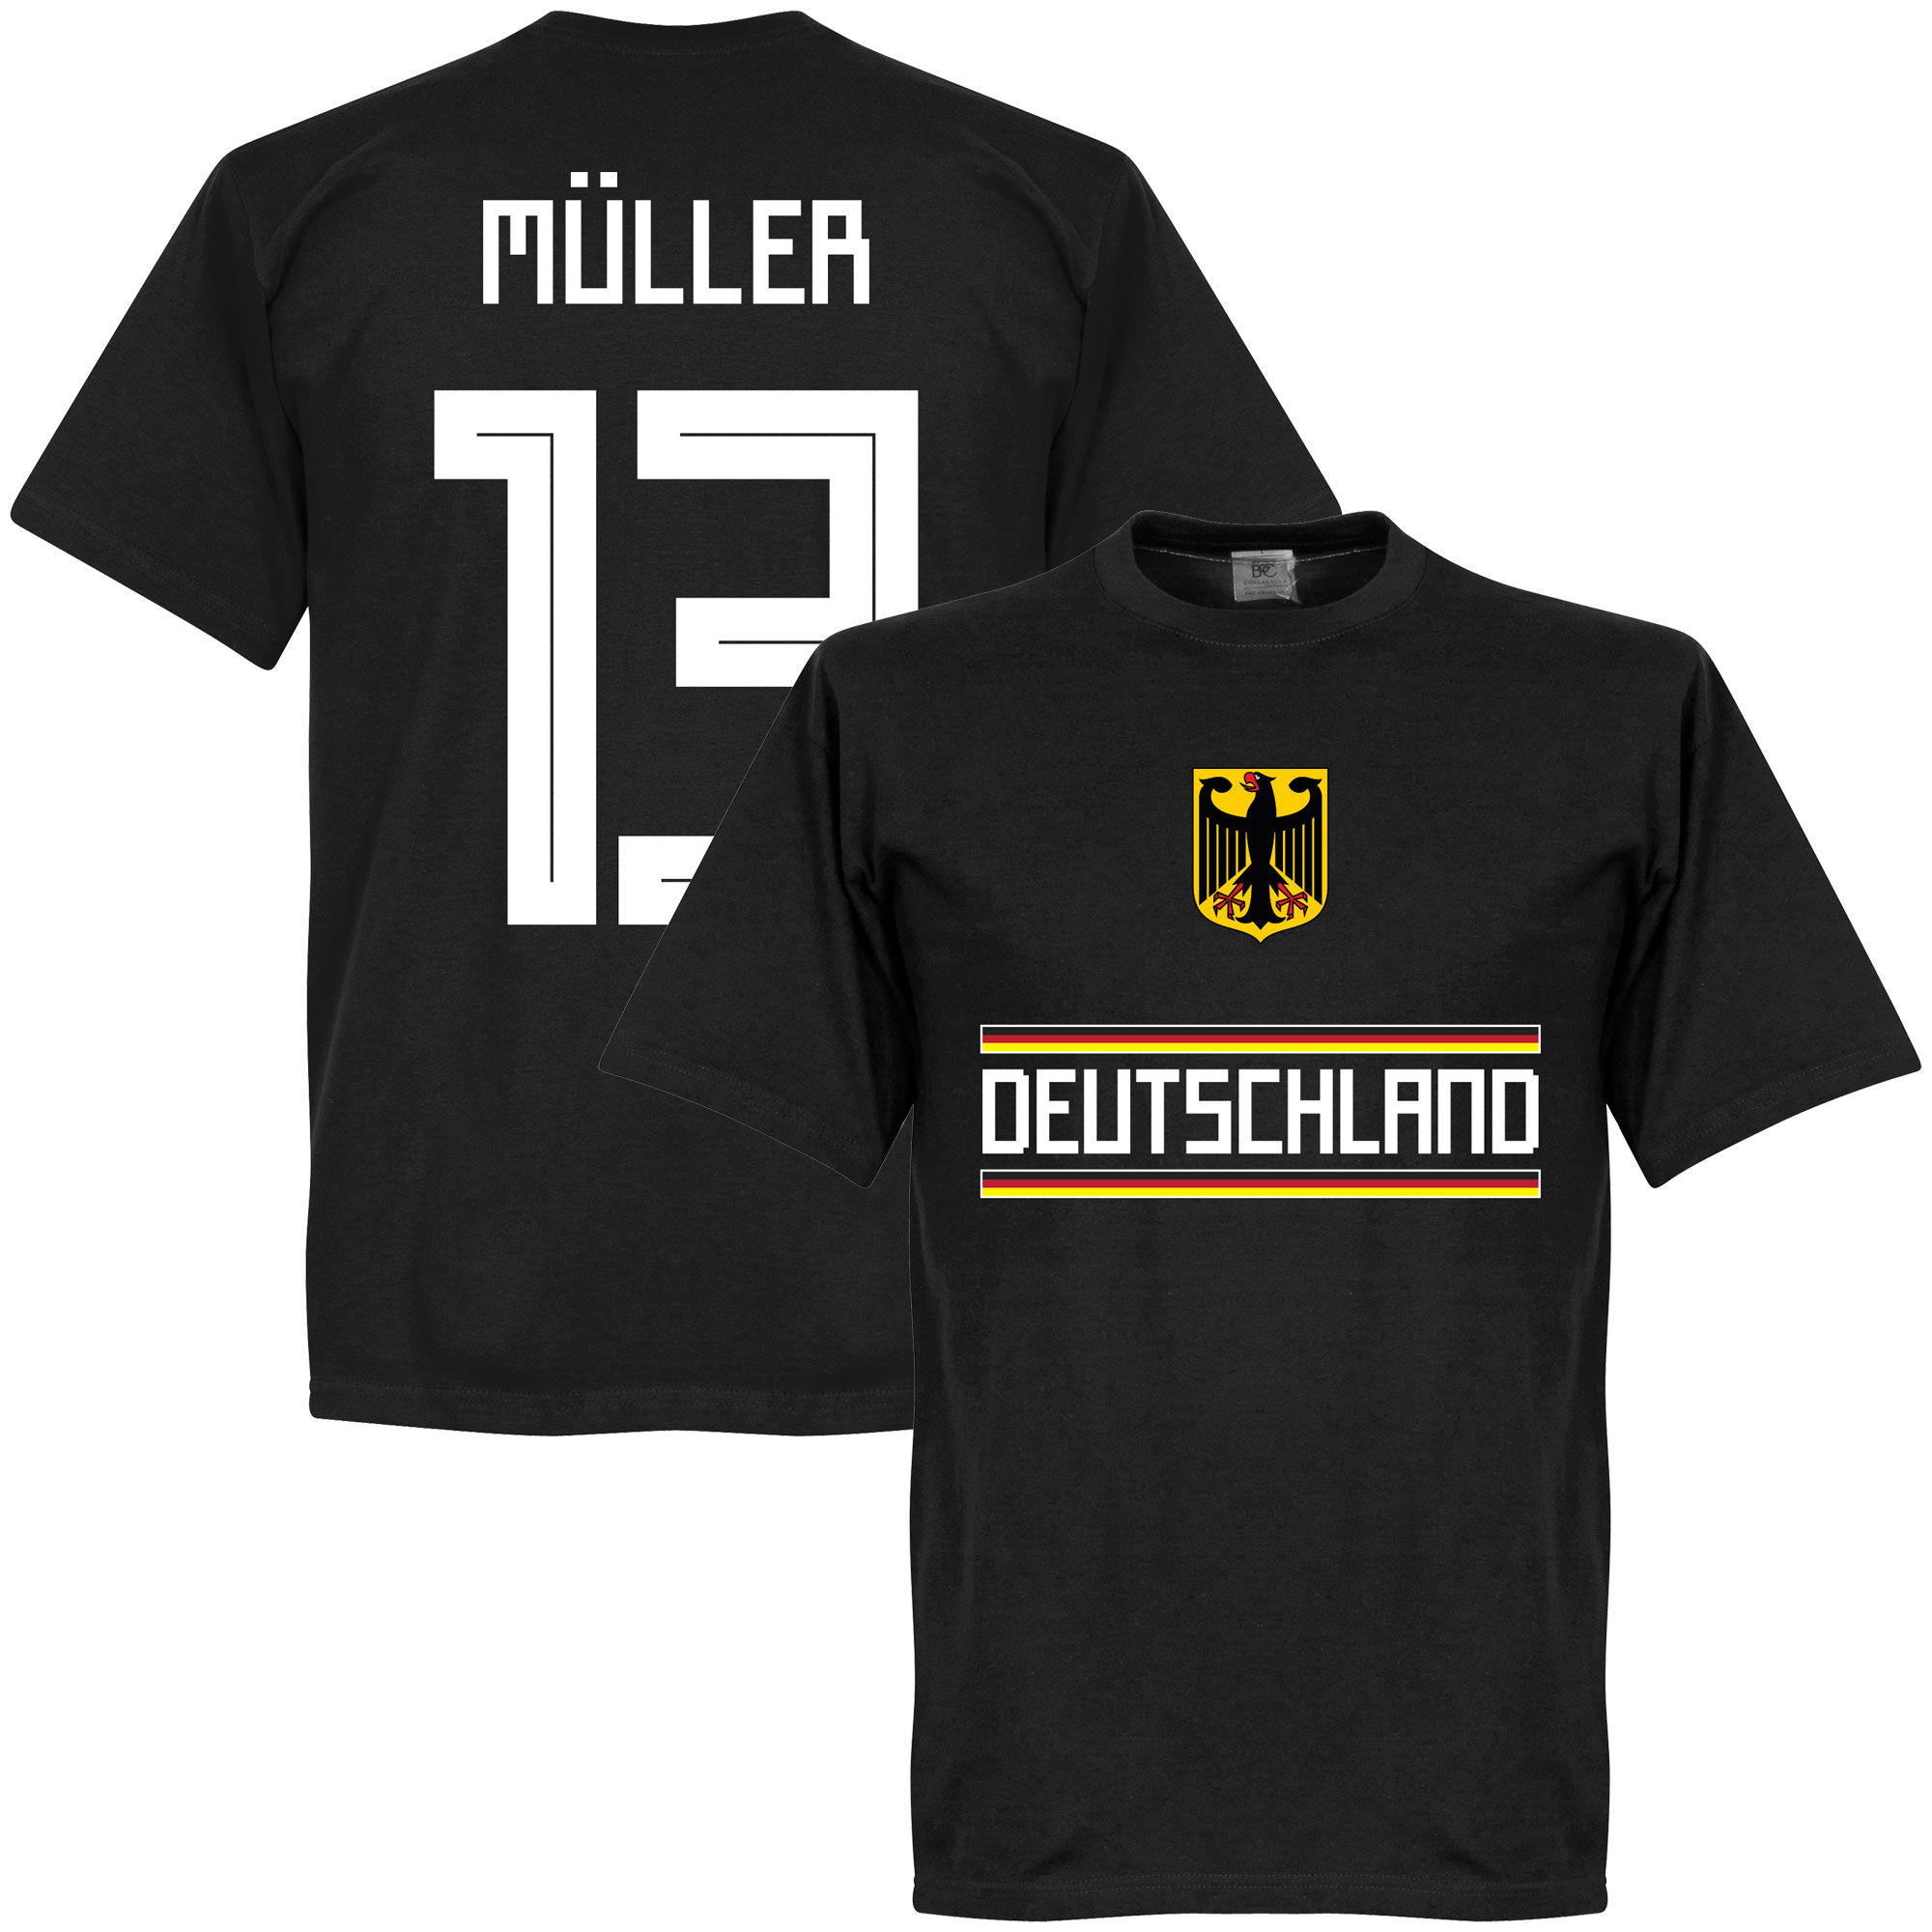 Německo - Tričko - Thomas Müller, číslo 13, černé